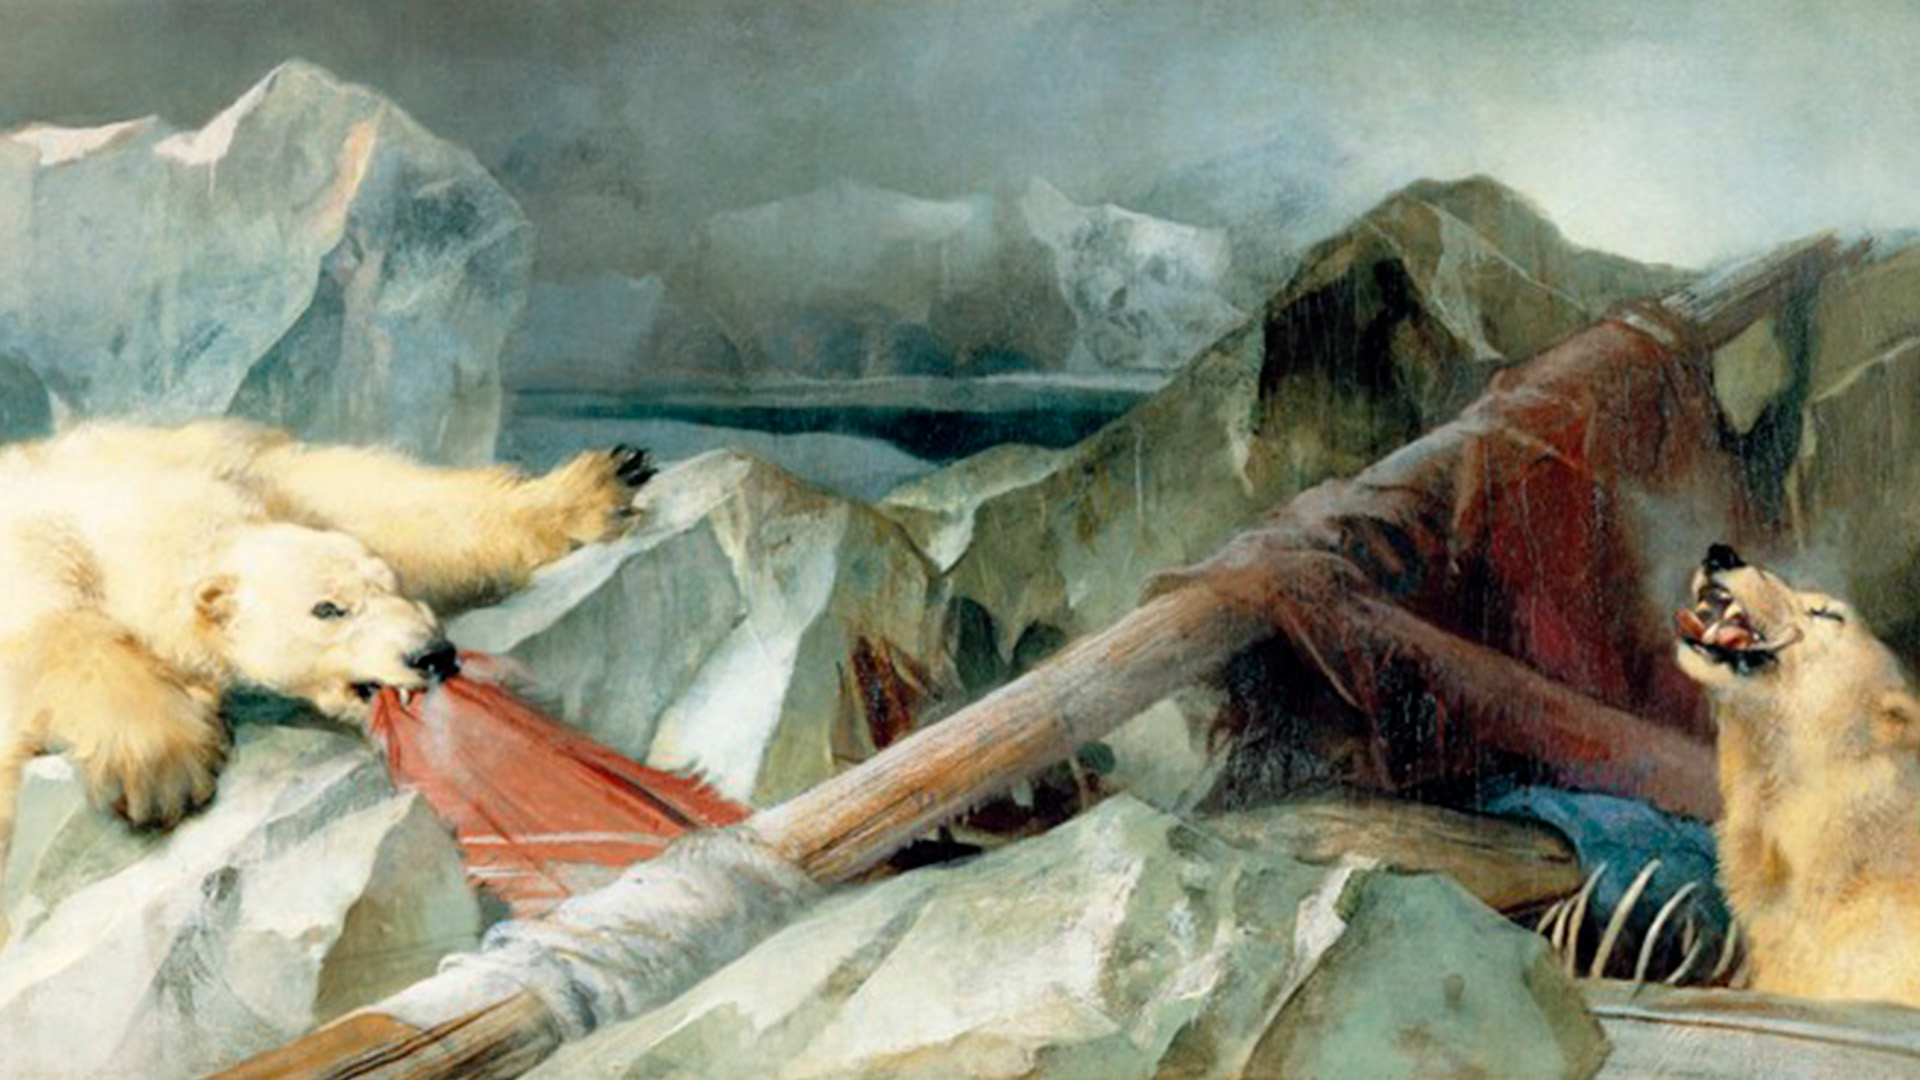 Mata tuyo Envío La belleza de la semana: “El hombre propone, Dios dispone”, la historia del  cuadro maldito de Edwin Landseer - Infobae